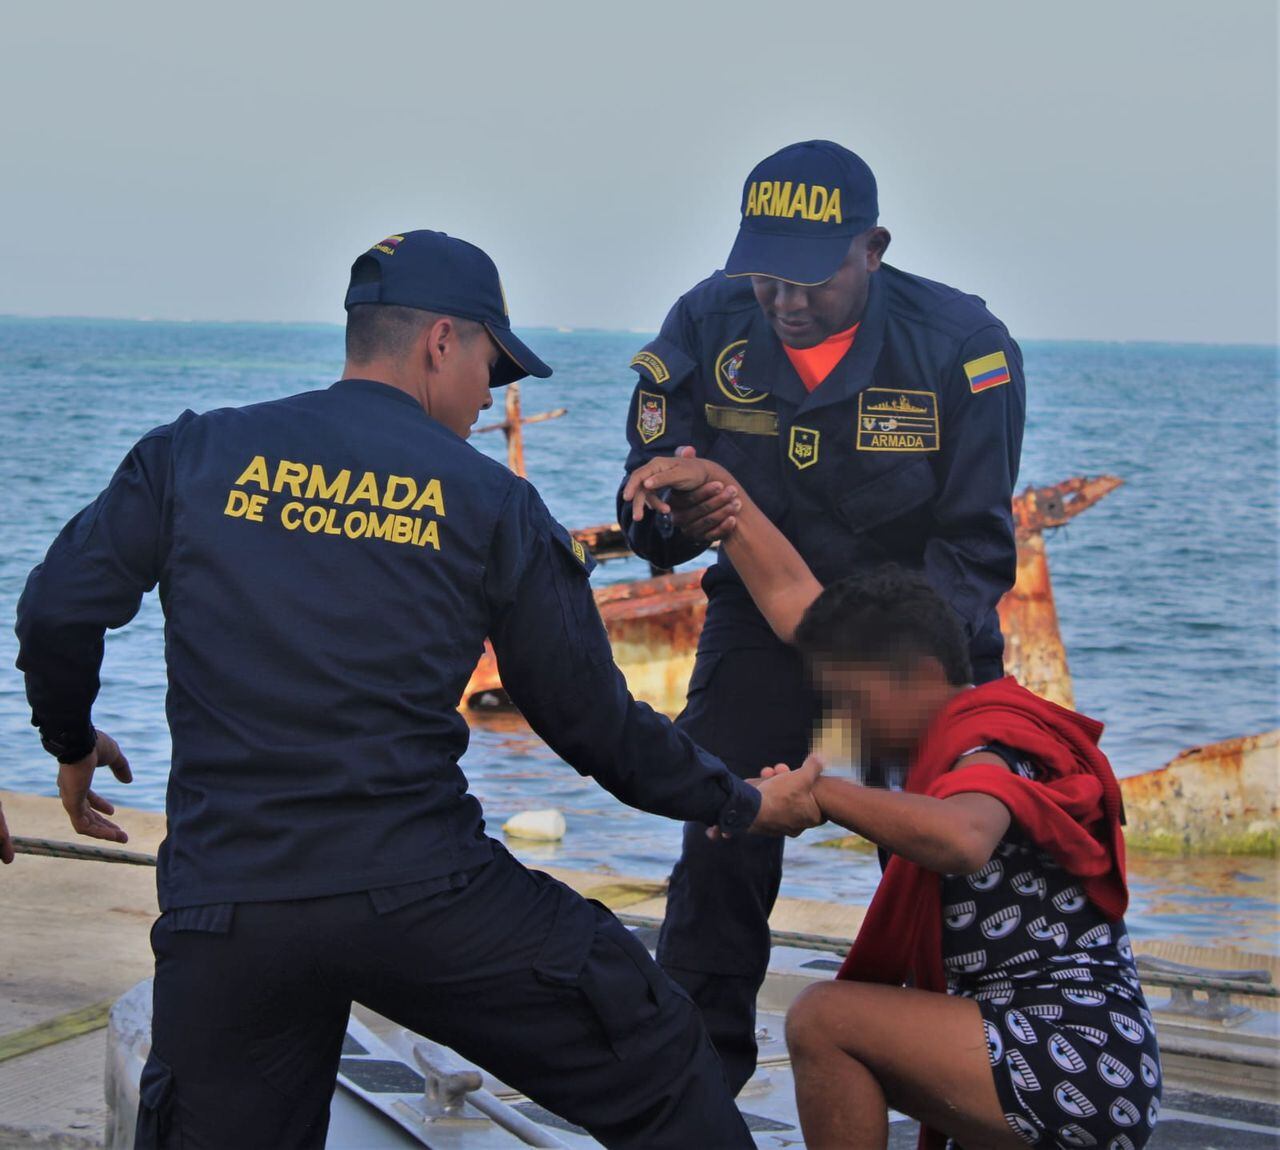 La Armada realiza constantes operativos en el mar tras el incremento de la migración irregular en el país.